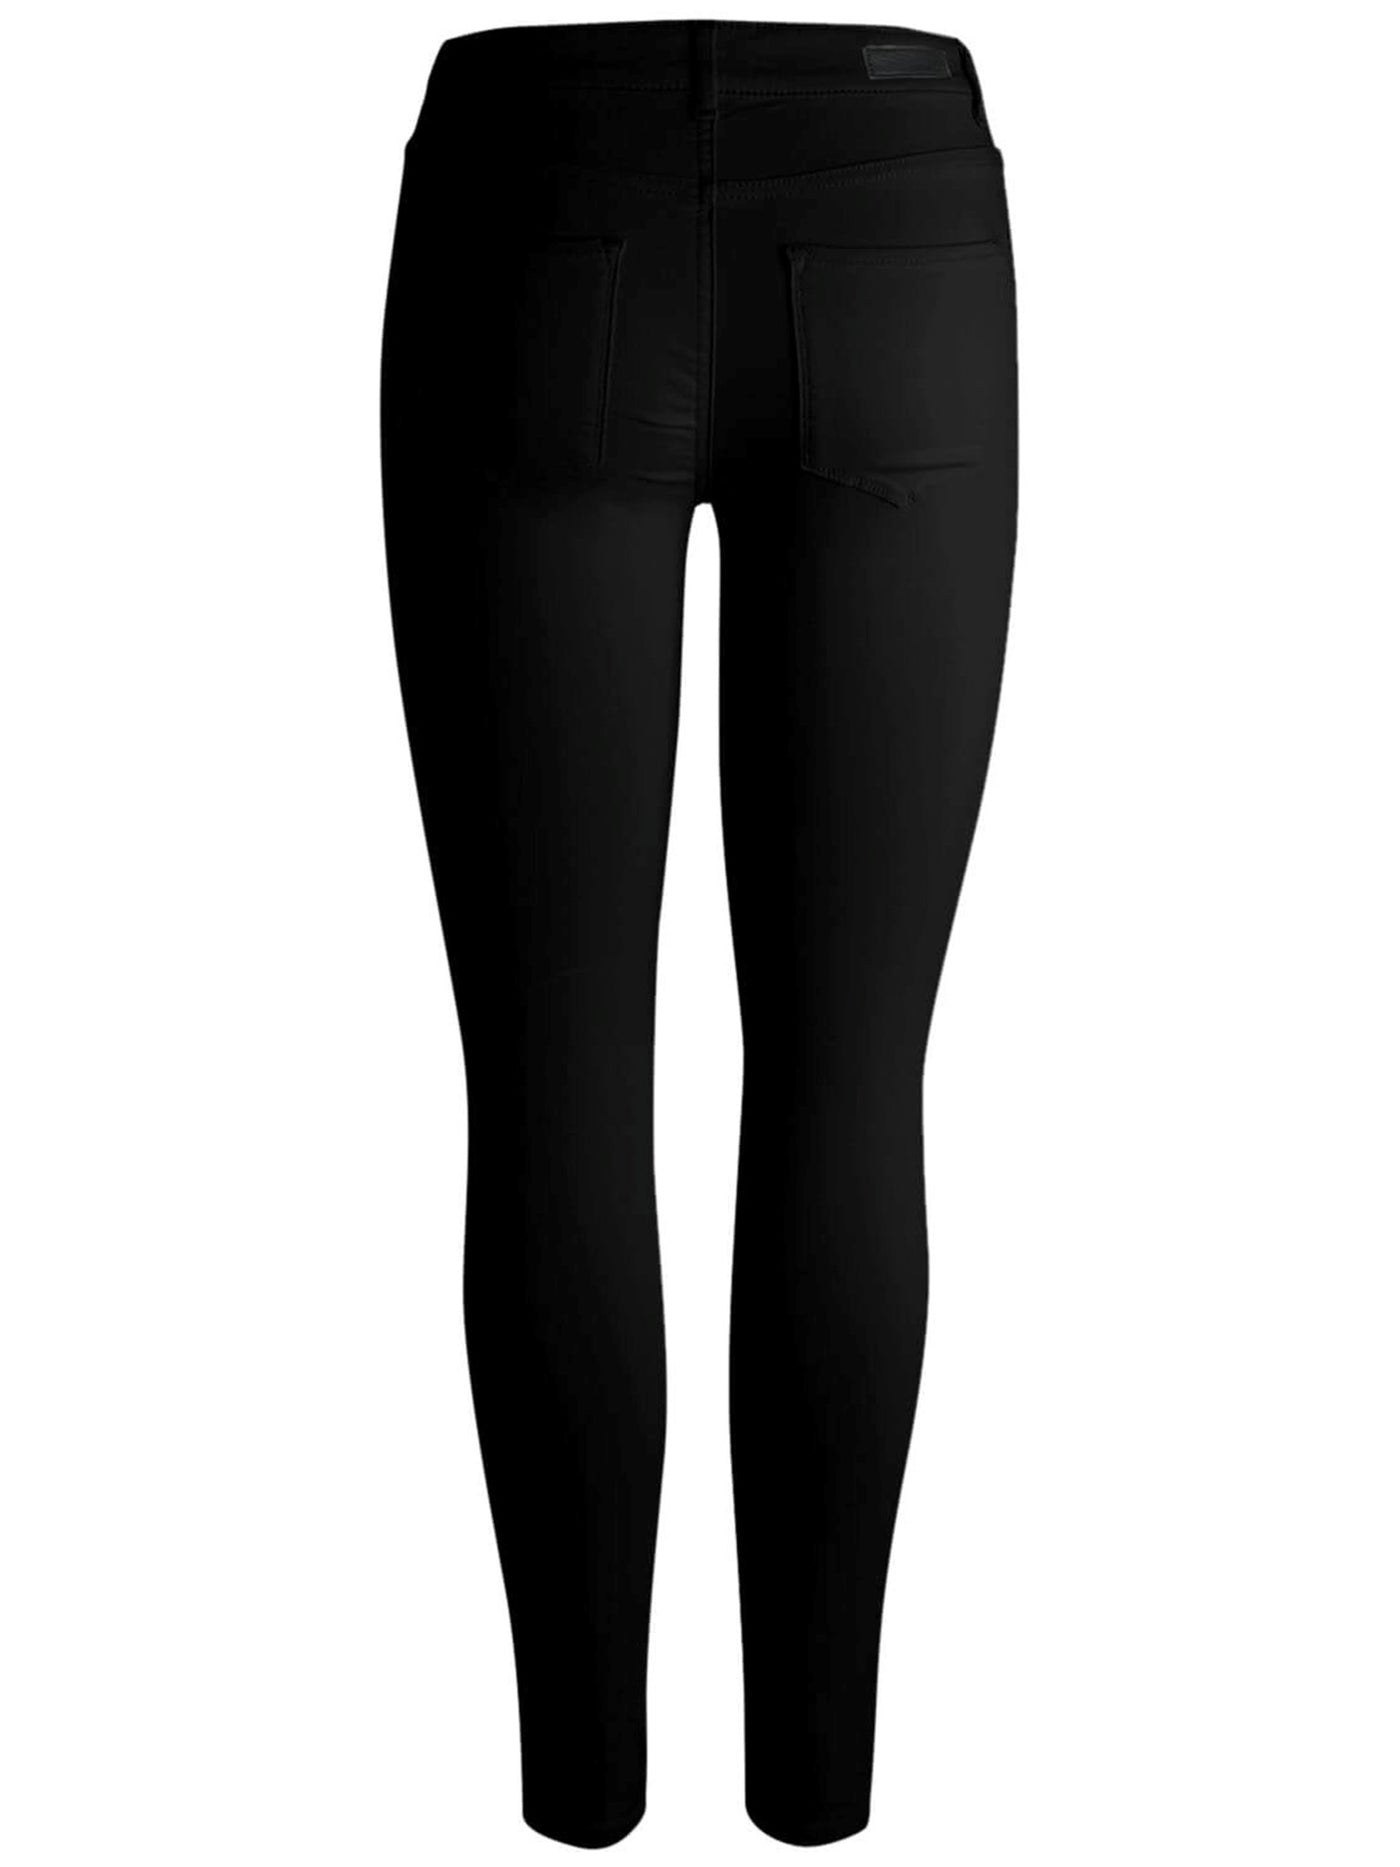 Pieces Jeans - Black (mid-waist) - PIECES - Black 5